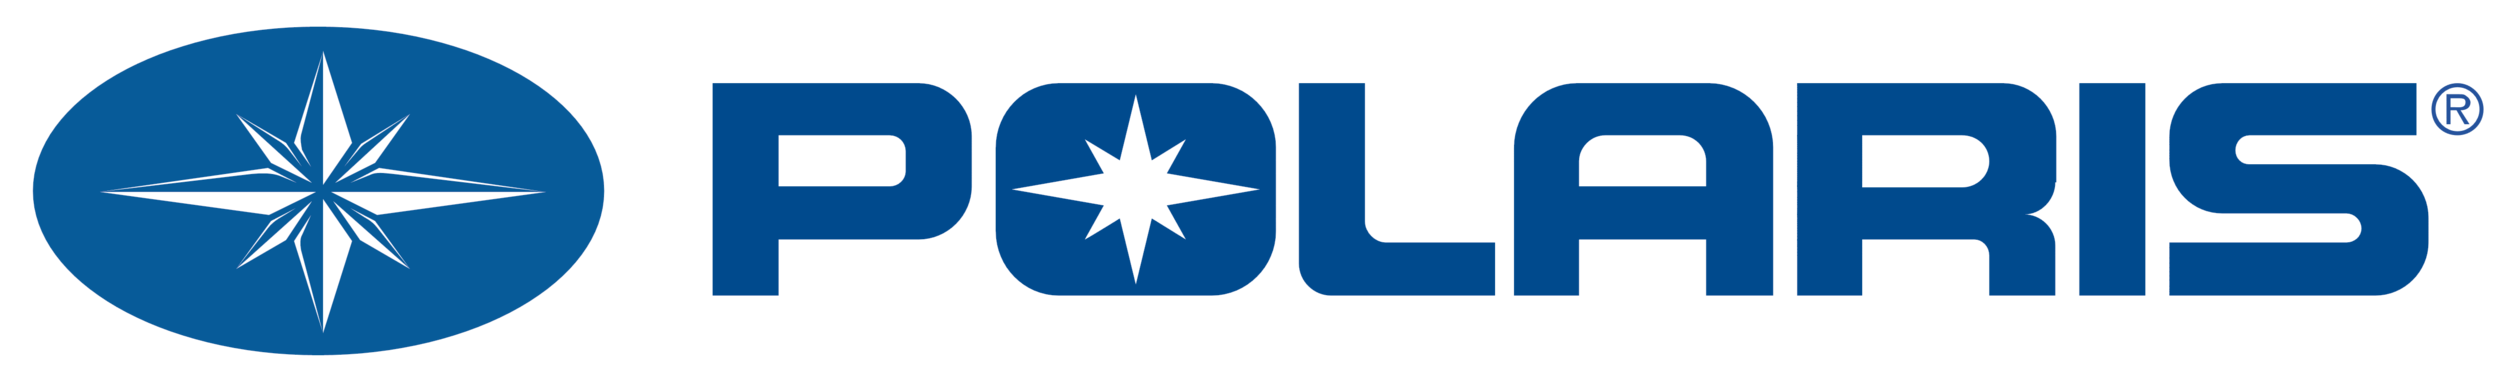 Polaris_logo[1].png